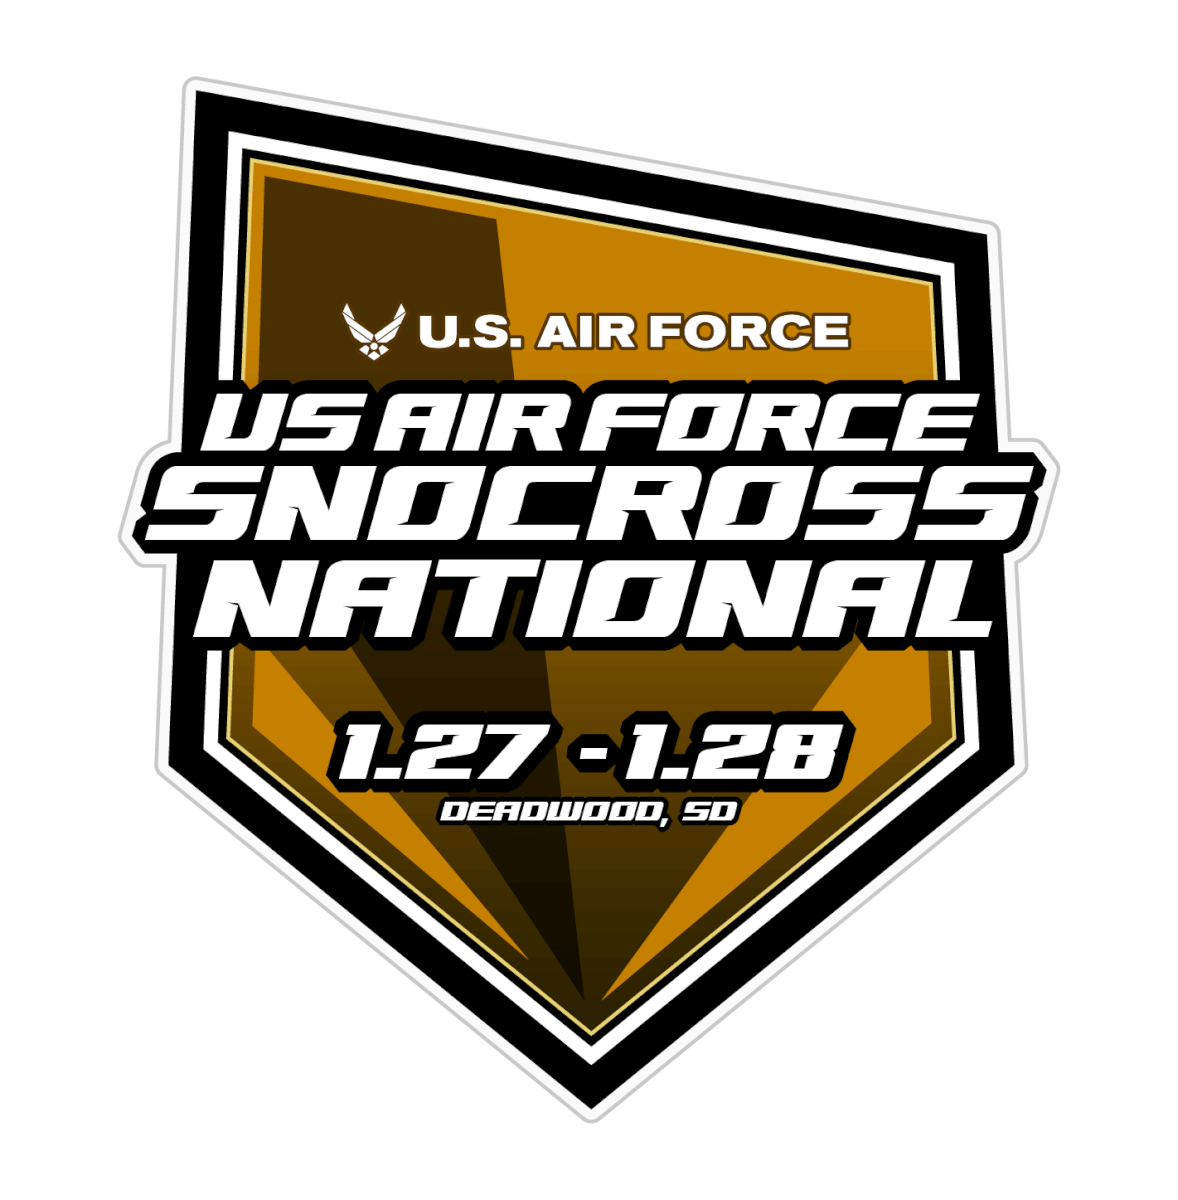 USAF SNOCROSS NATIONAL